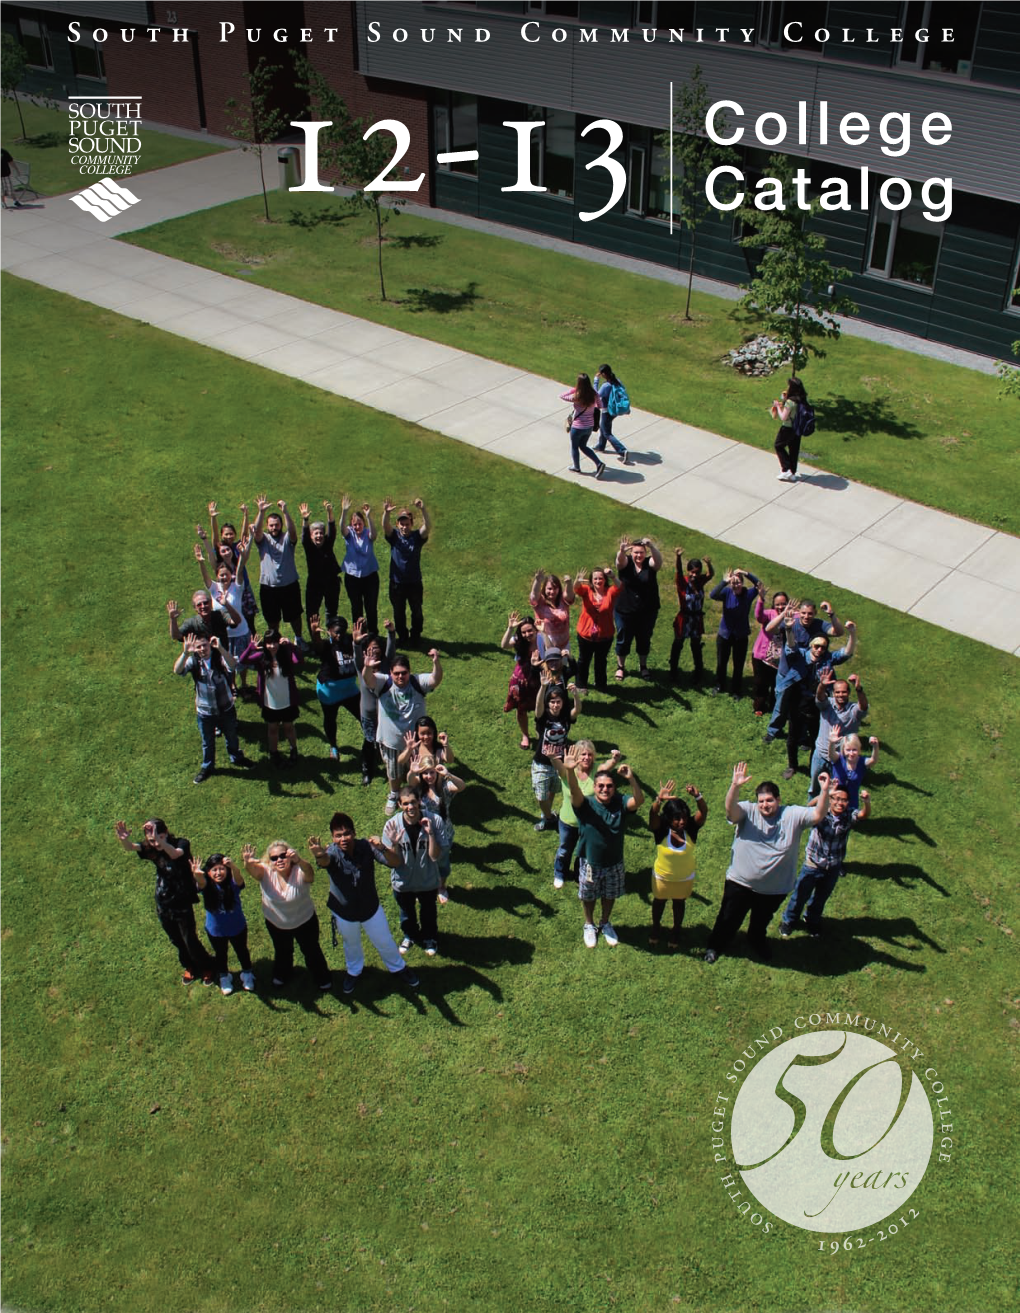 2012-13 College Catalog